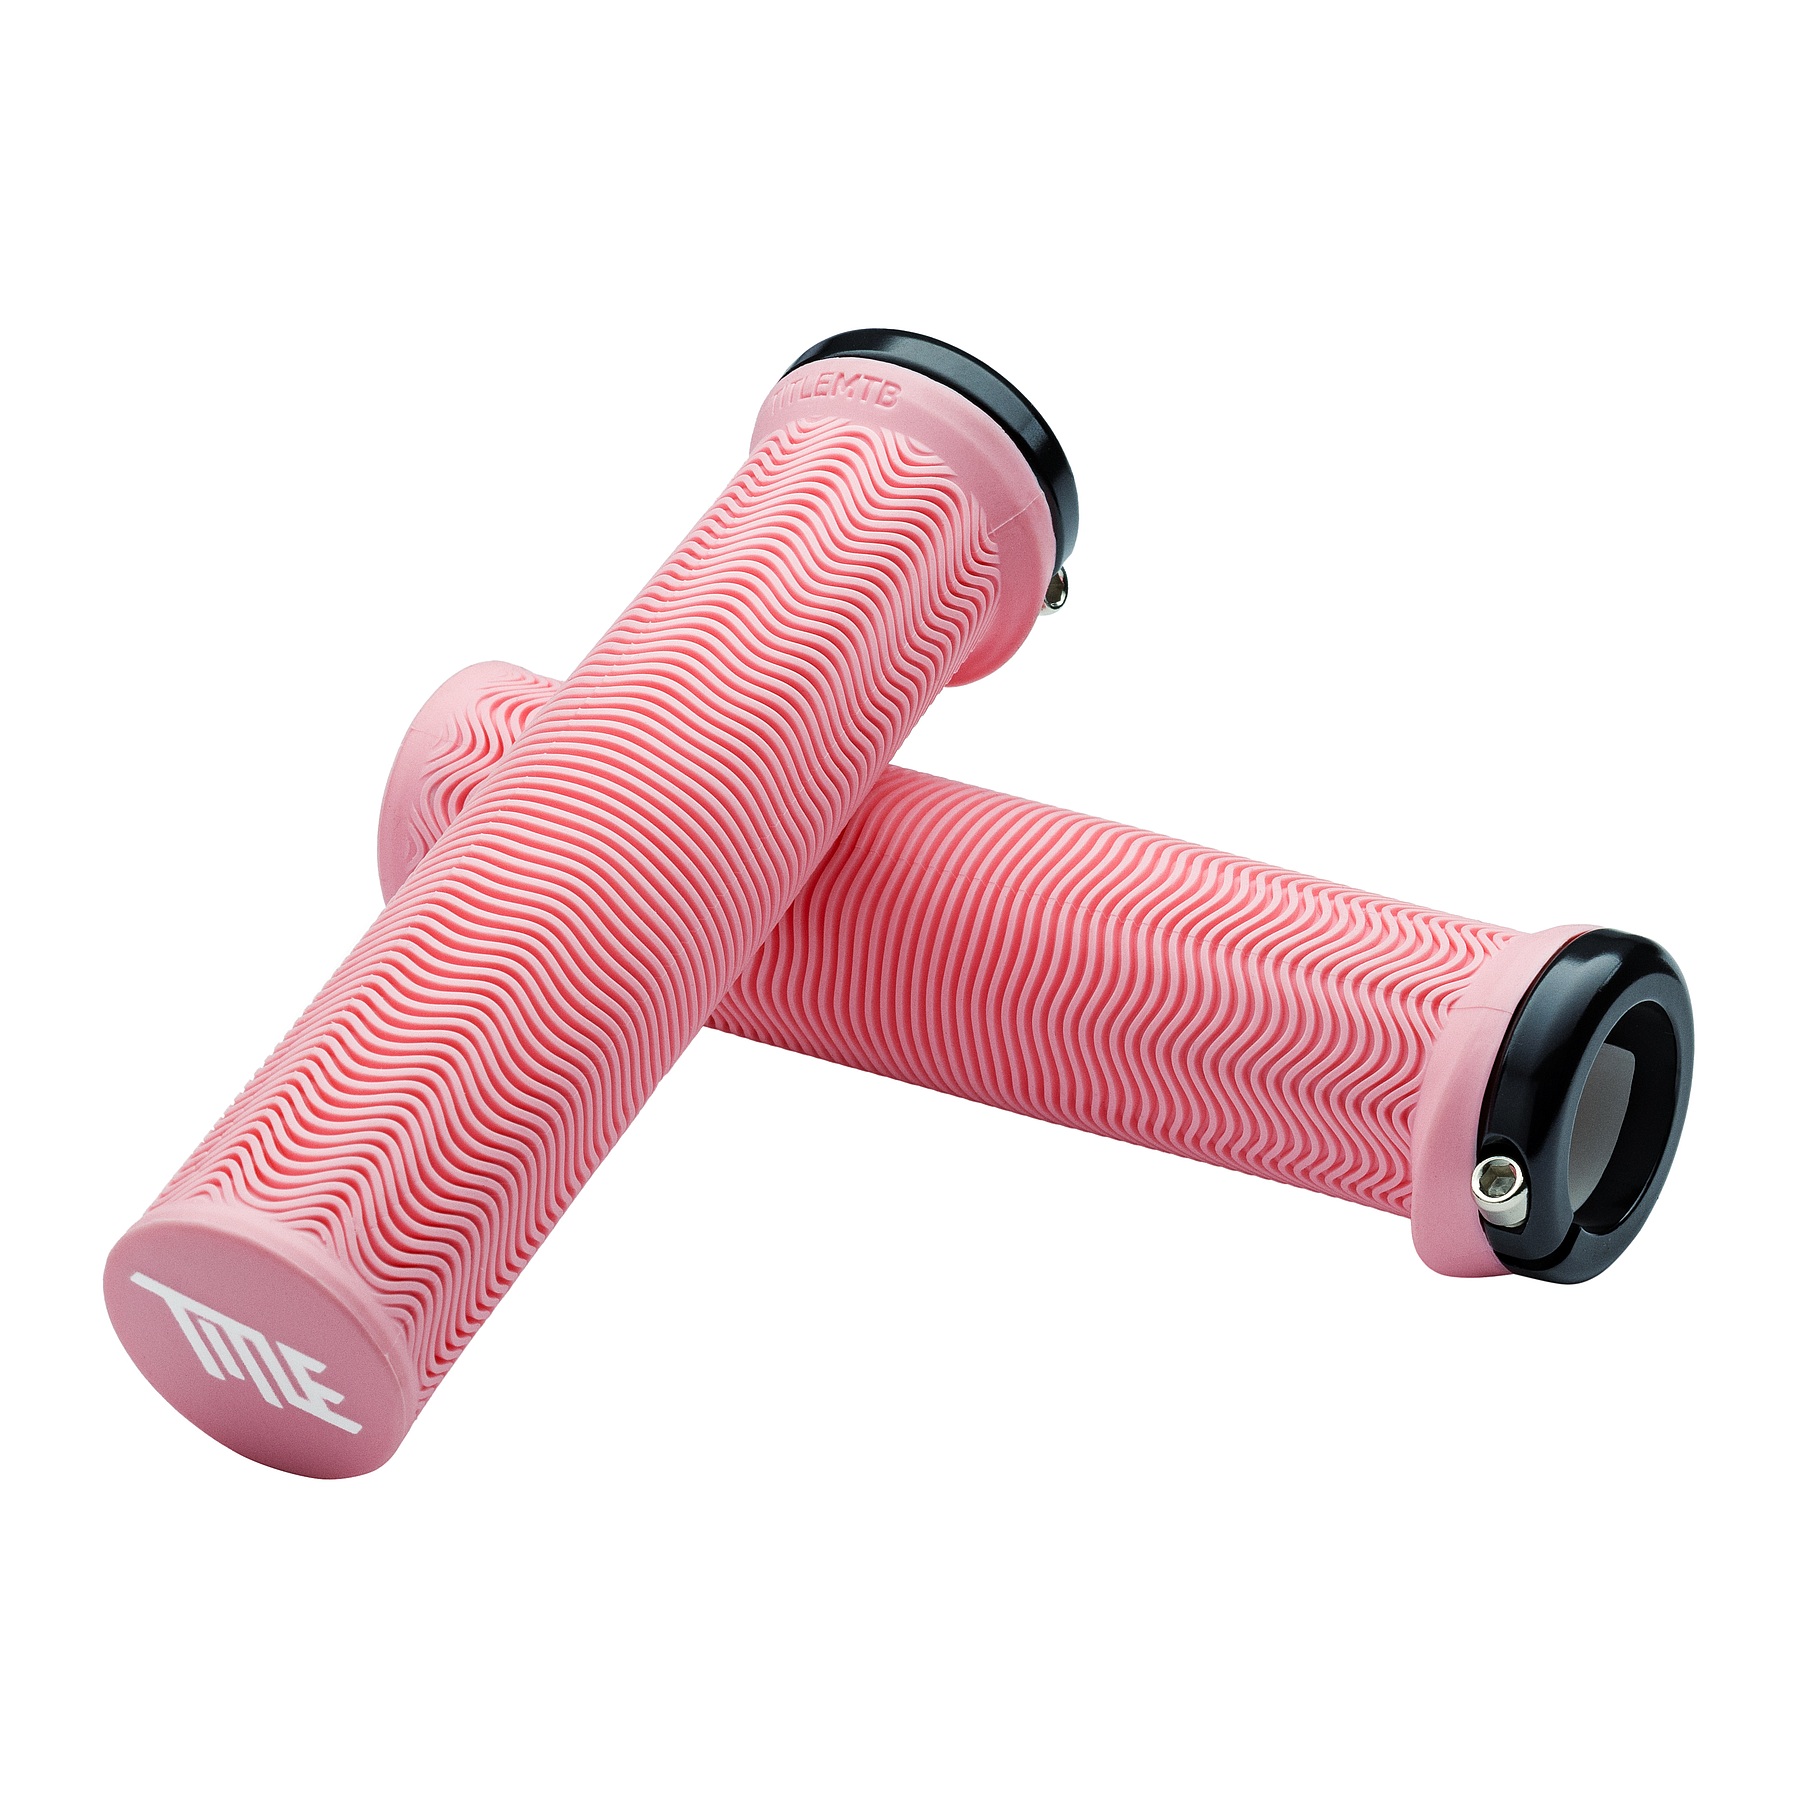 Produktbild von Title L01 Lock on Lenkergriffe - 31mm - pink